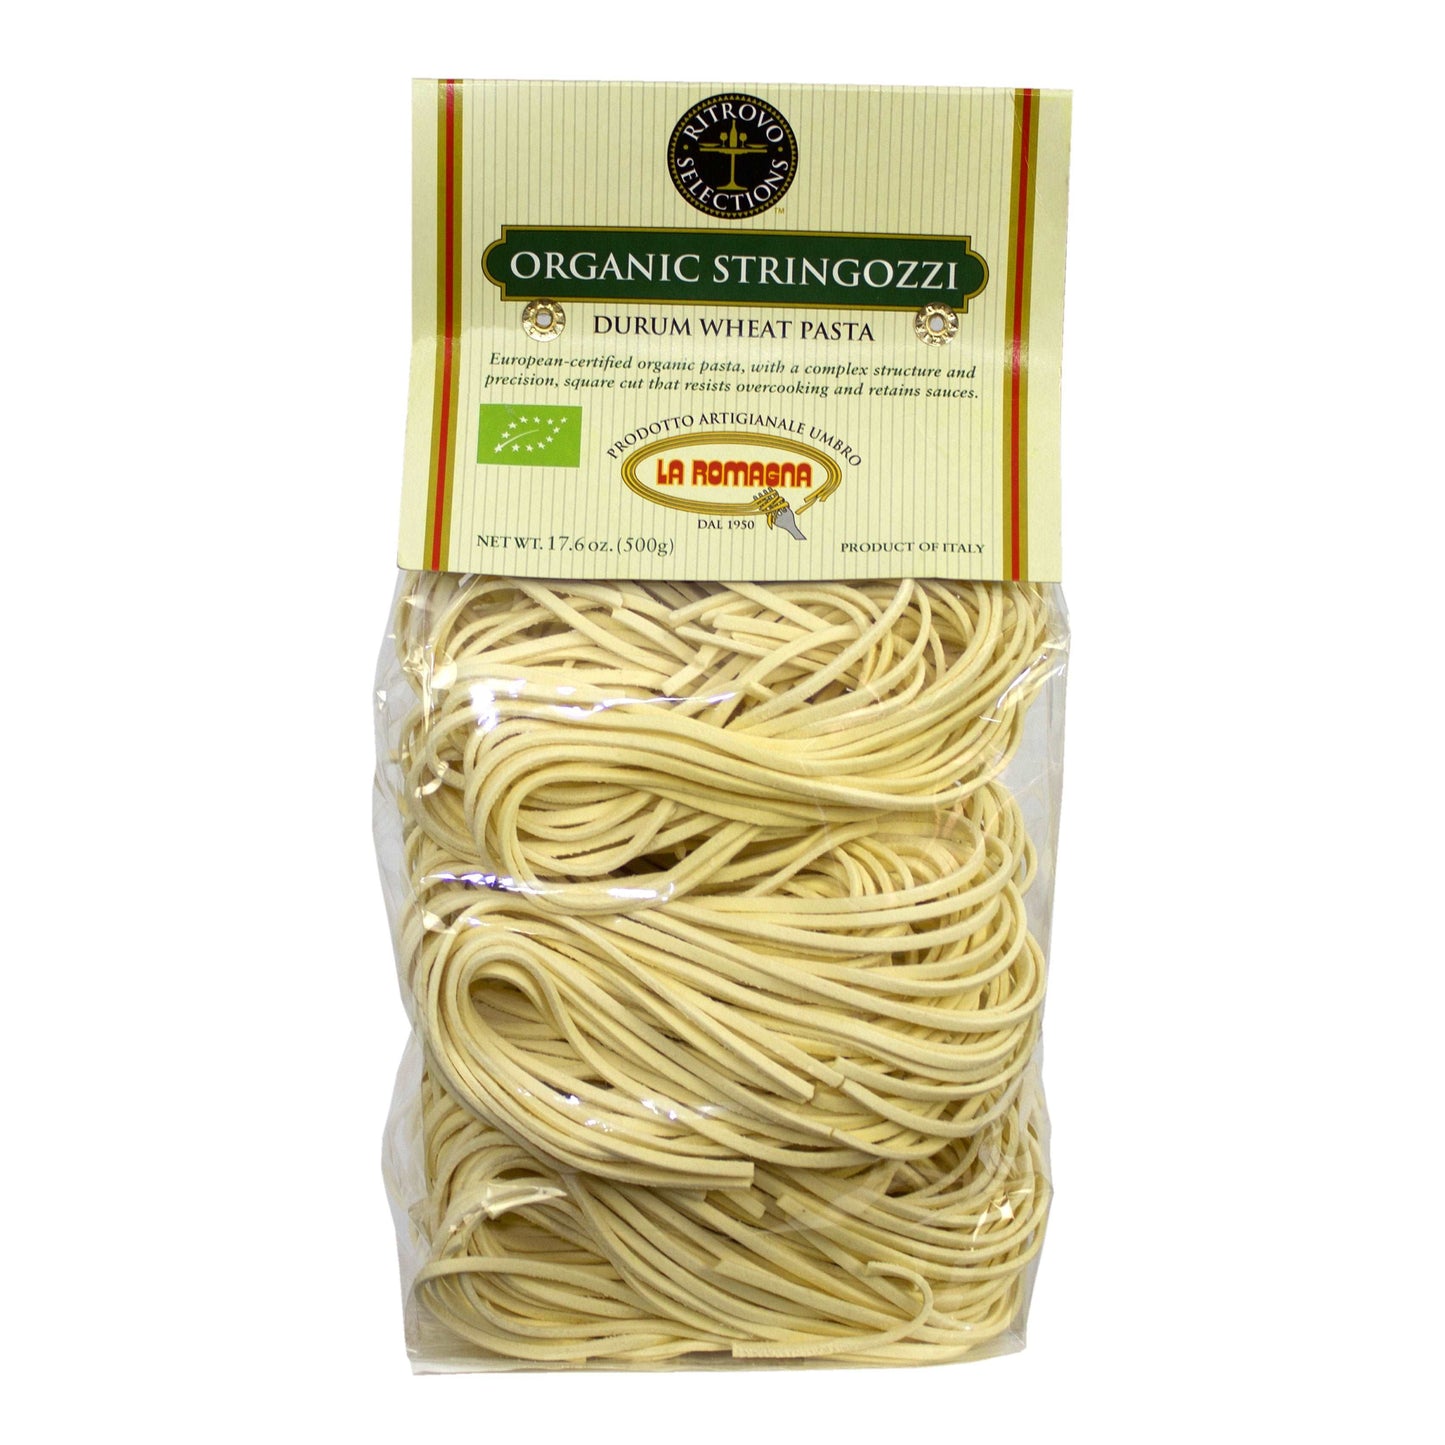 La Romagna Stringozzi Organic - Durum Wheat Pasta